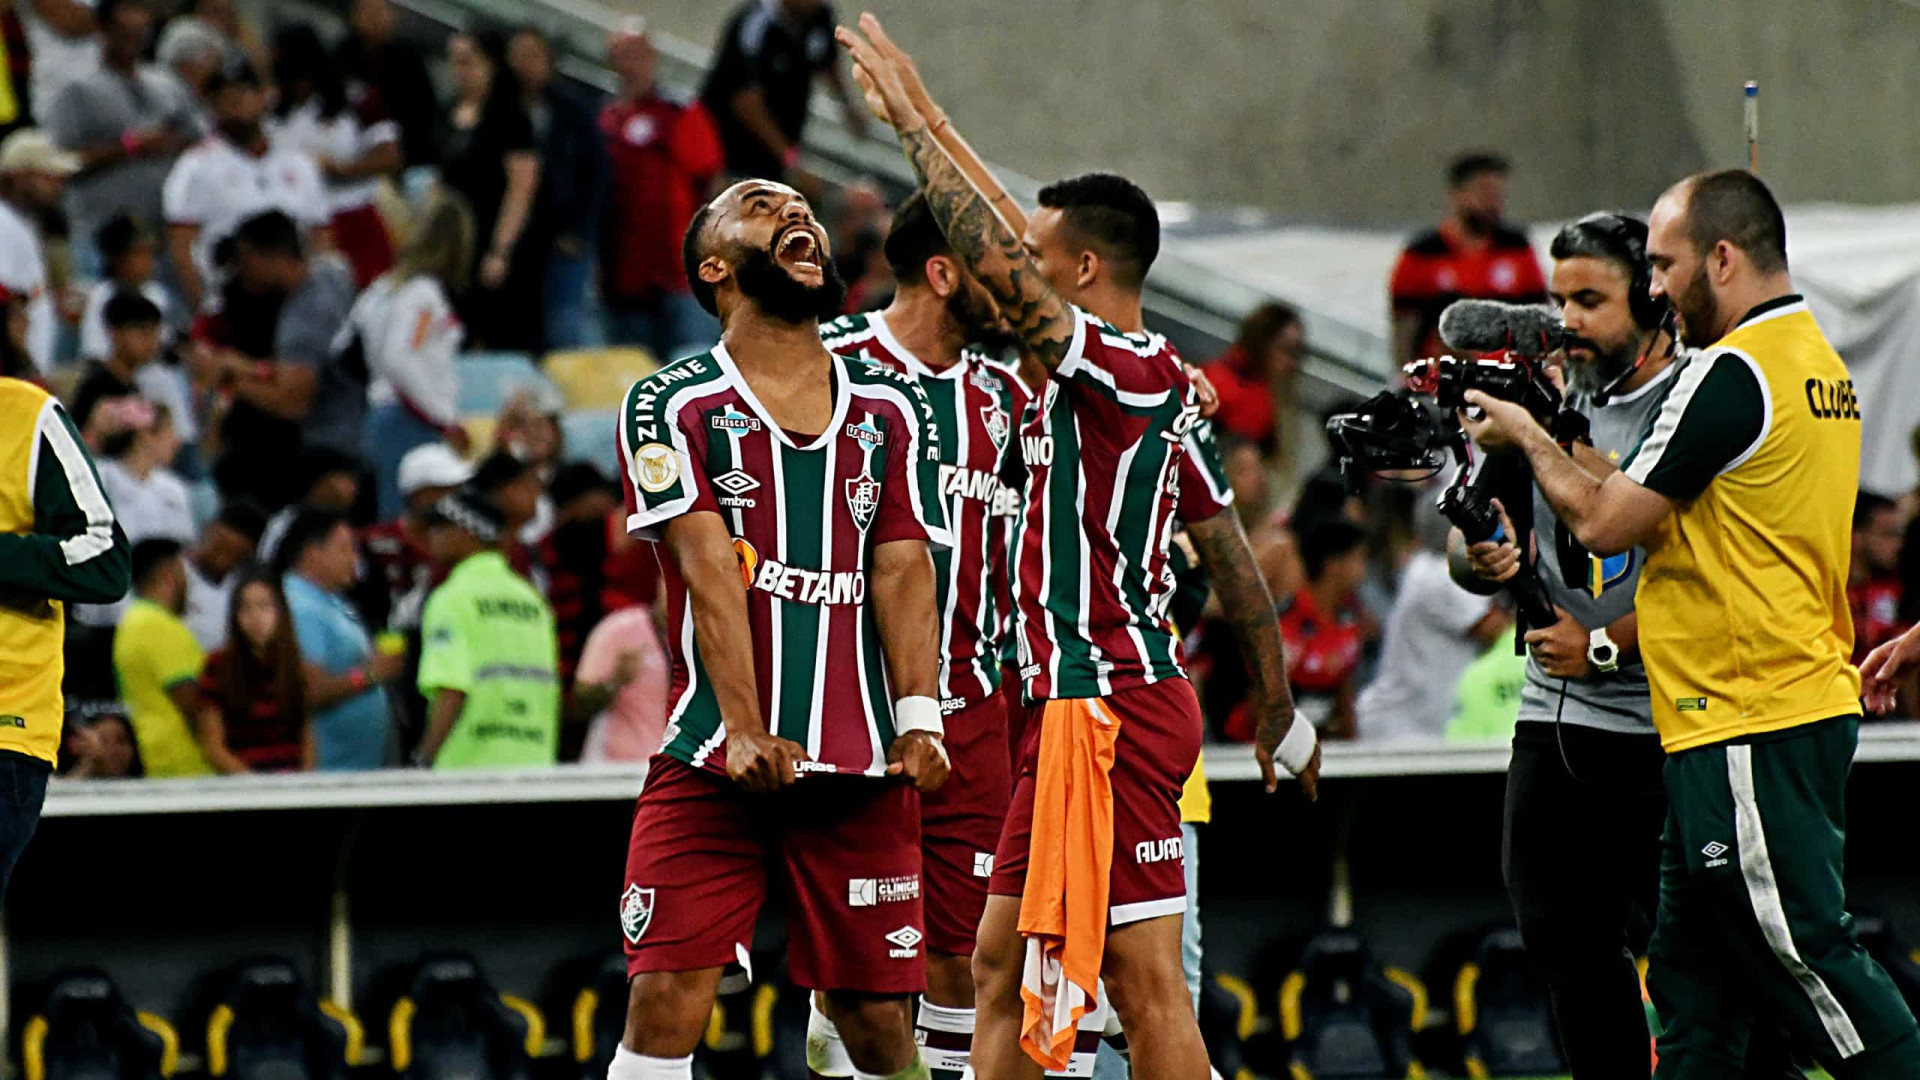 Em grande jogo, Fluminense quebra invencibilidade do Flamengo e assume o 2º lugar